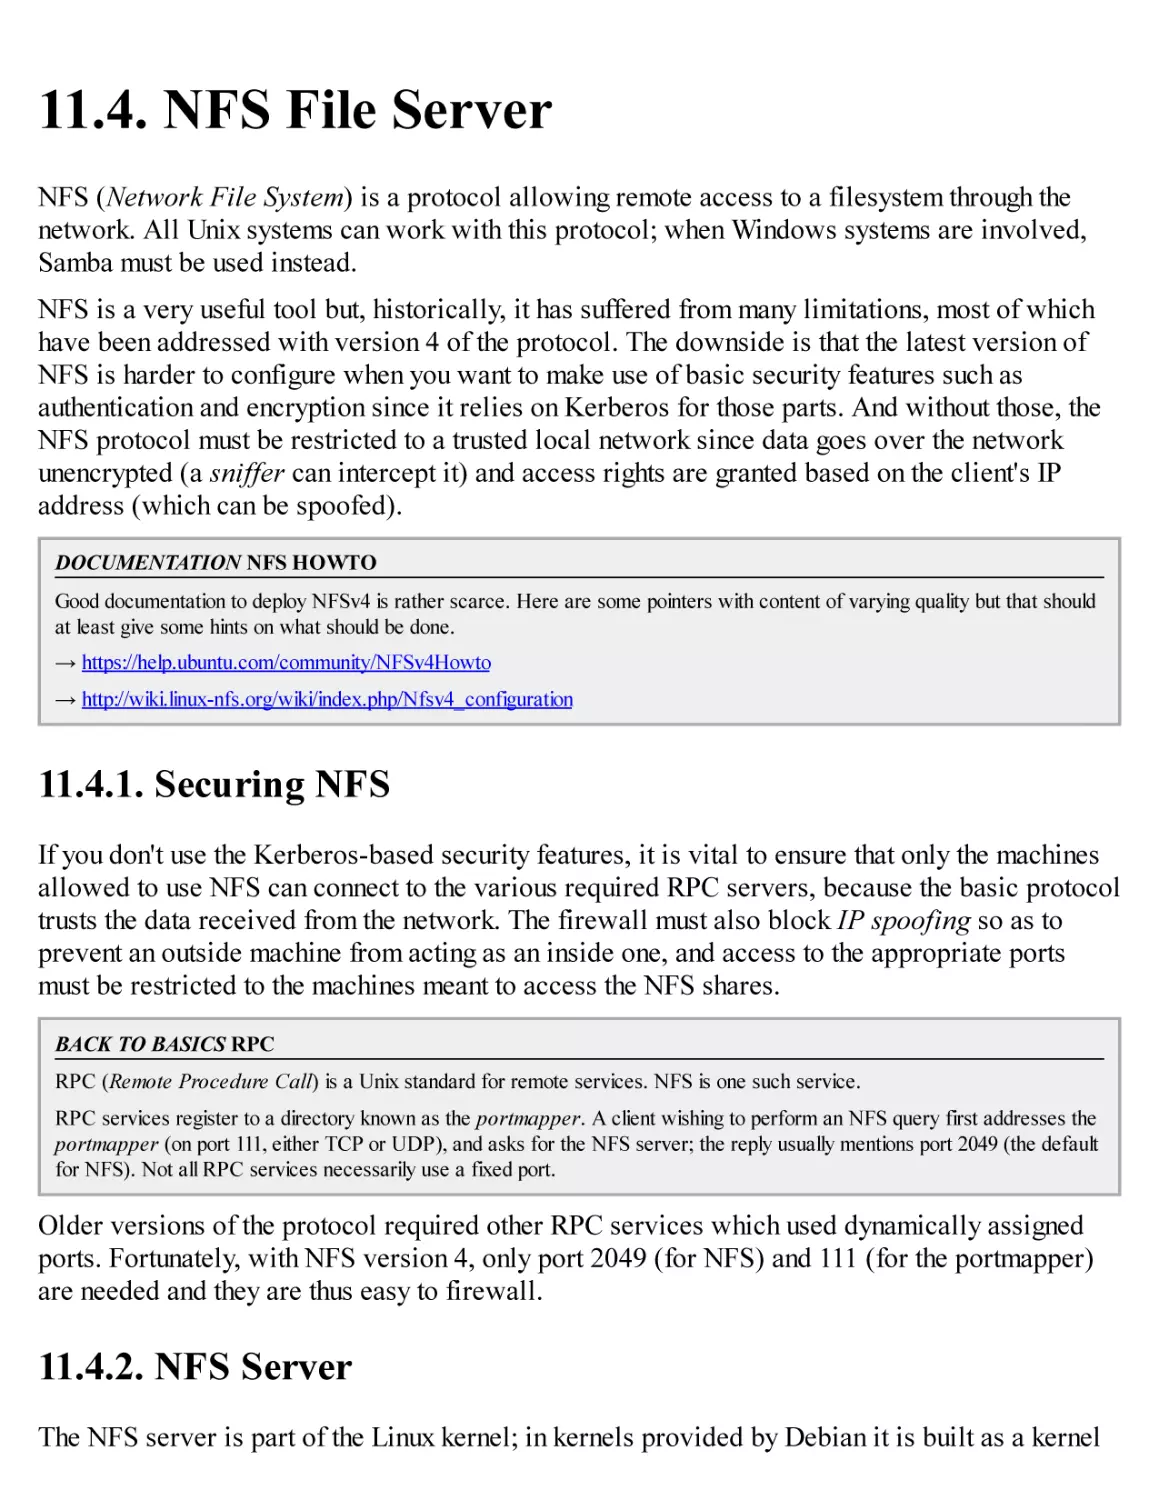 11.4. NFS File Server
11.4.1. Securing NFS
11.4.2. NFS Server